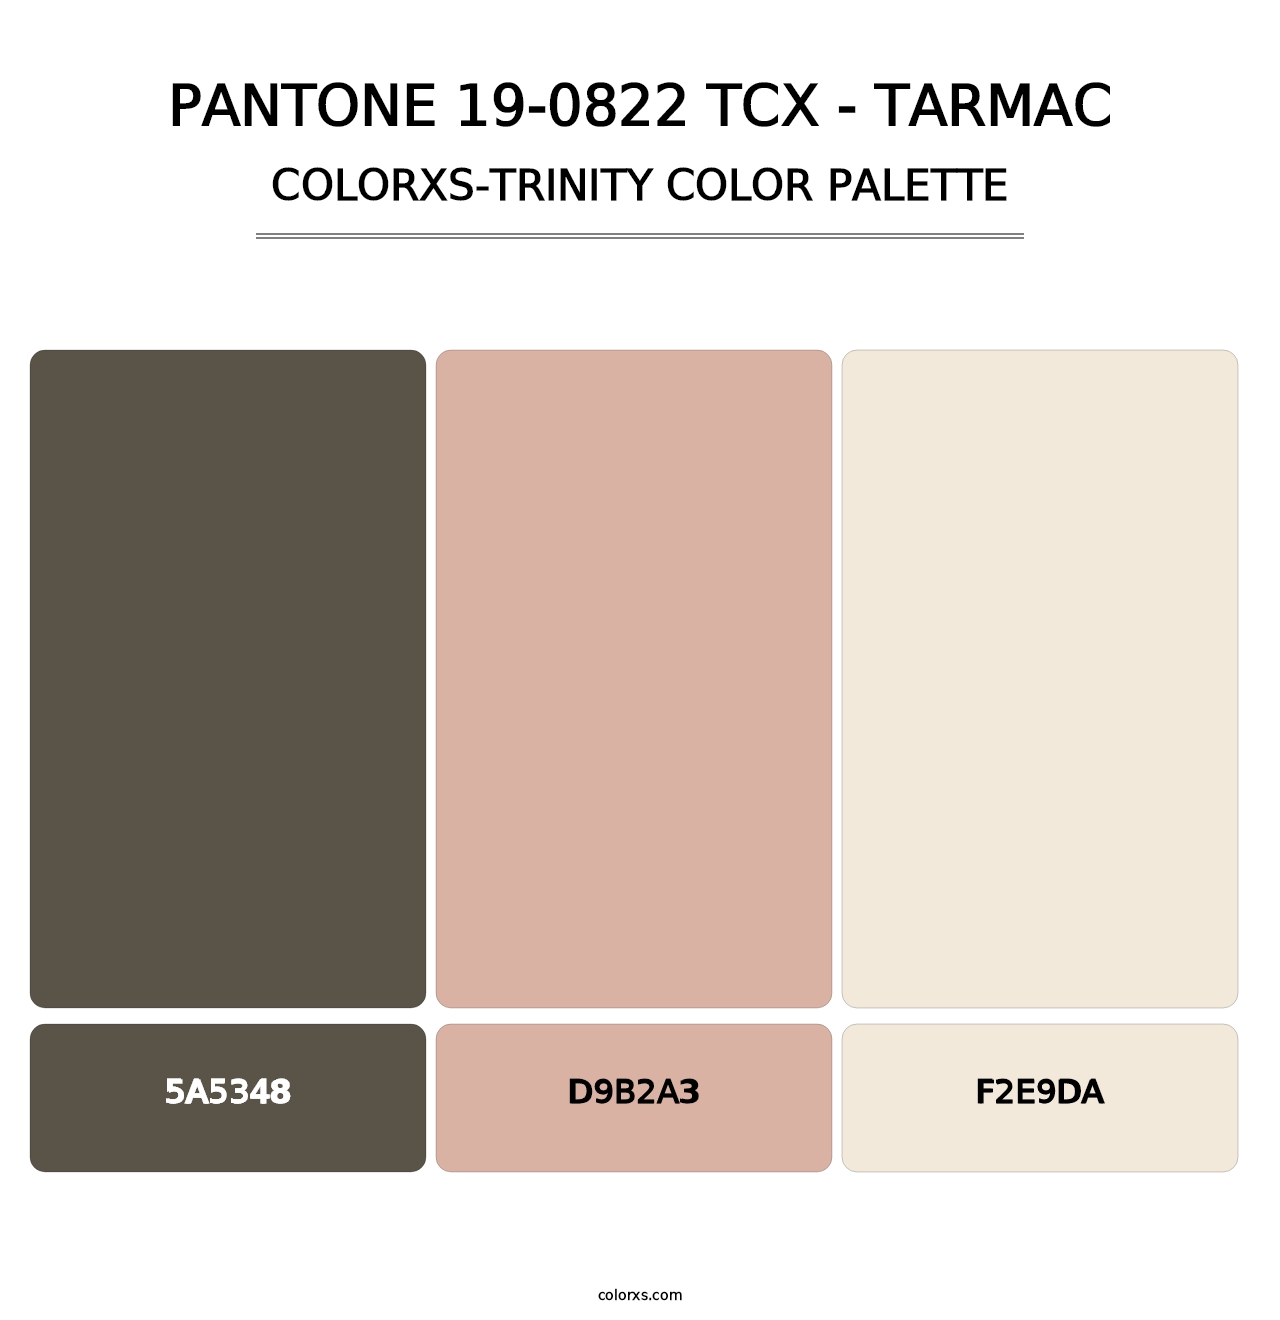 PANTONE 19-0822 TCX - Tarmac - Colorxs Trinity Palette